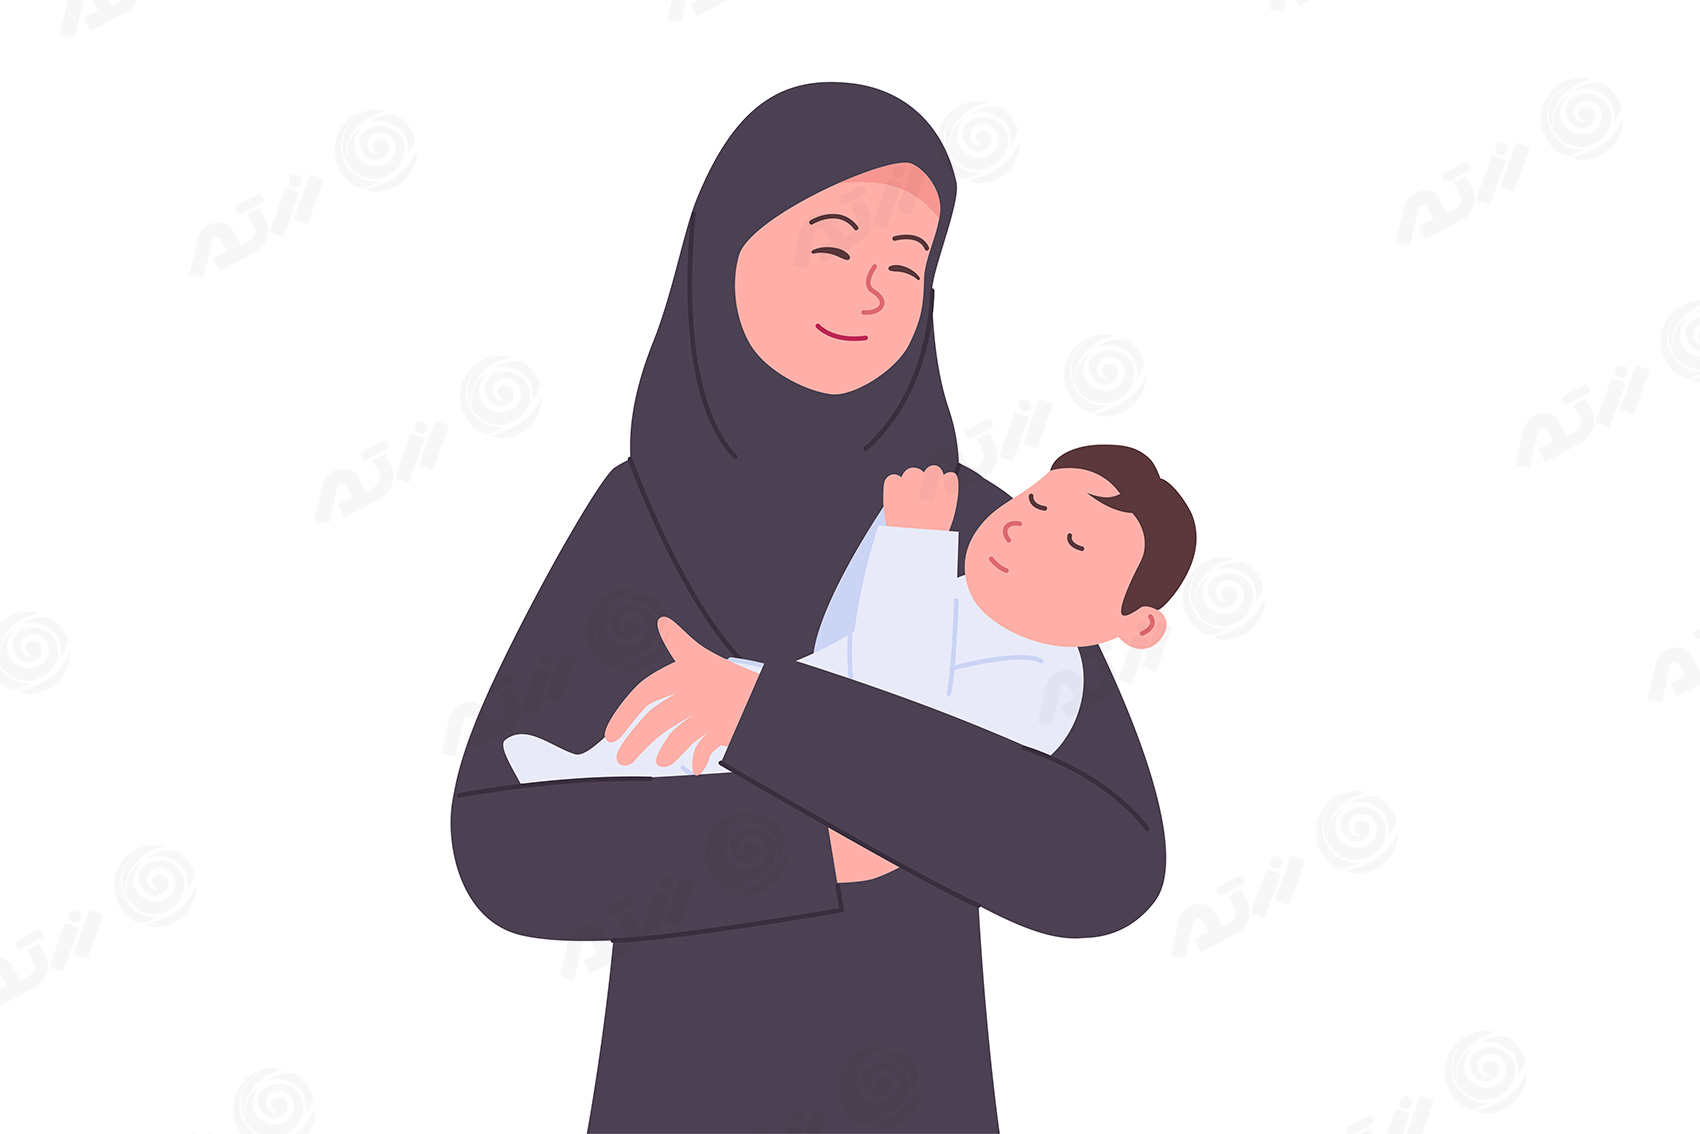 دانلود وکتور EPS مادر با حجاب اسلامی درحال بغل کردن کودک نوزاد ویژه روز مادر